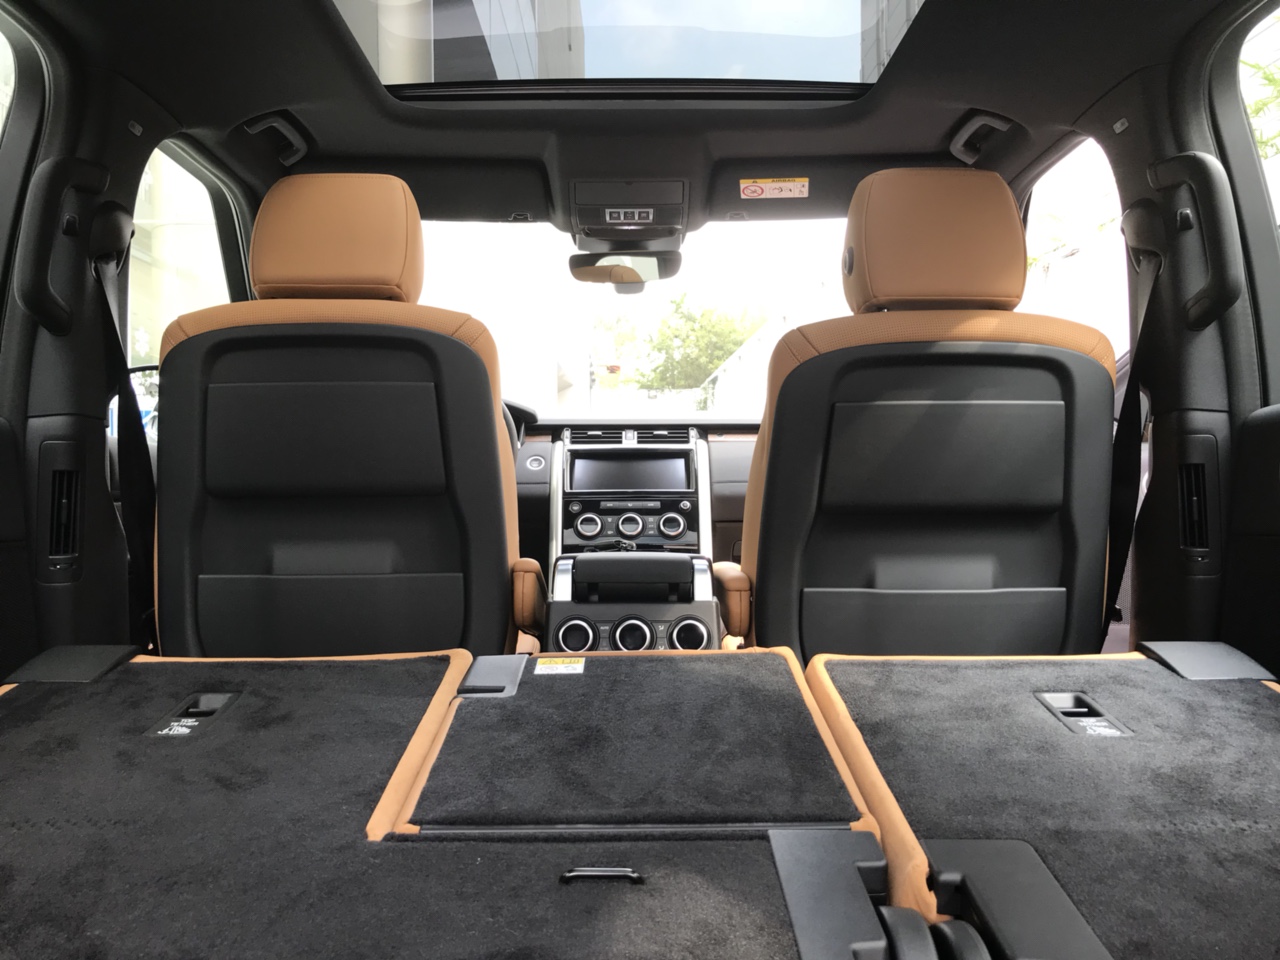 Đánh Giá Xe 7 Chỗ Land Rover Discovery HSE Luxury Cao Cấp Màu Xanh Rêu Aintree Green 2018, Xe Range Rover 7 Chỗ thế hệ mới model 2019 có gì khác model này, xe chạy có hao xăng không, xe nhập từ nước nào.